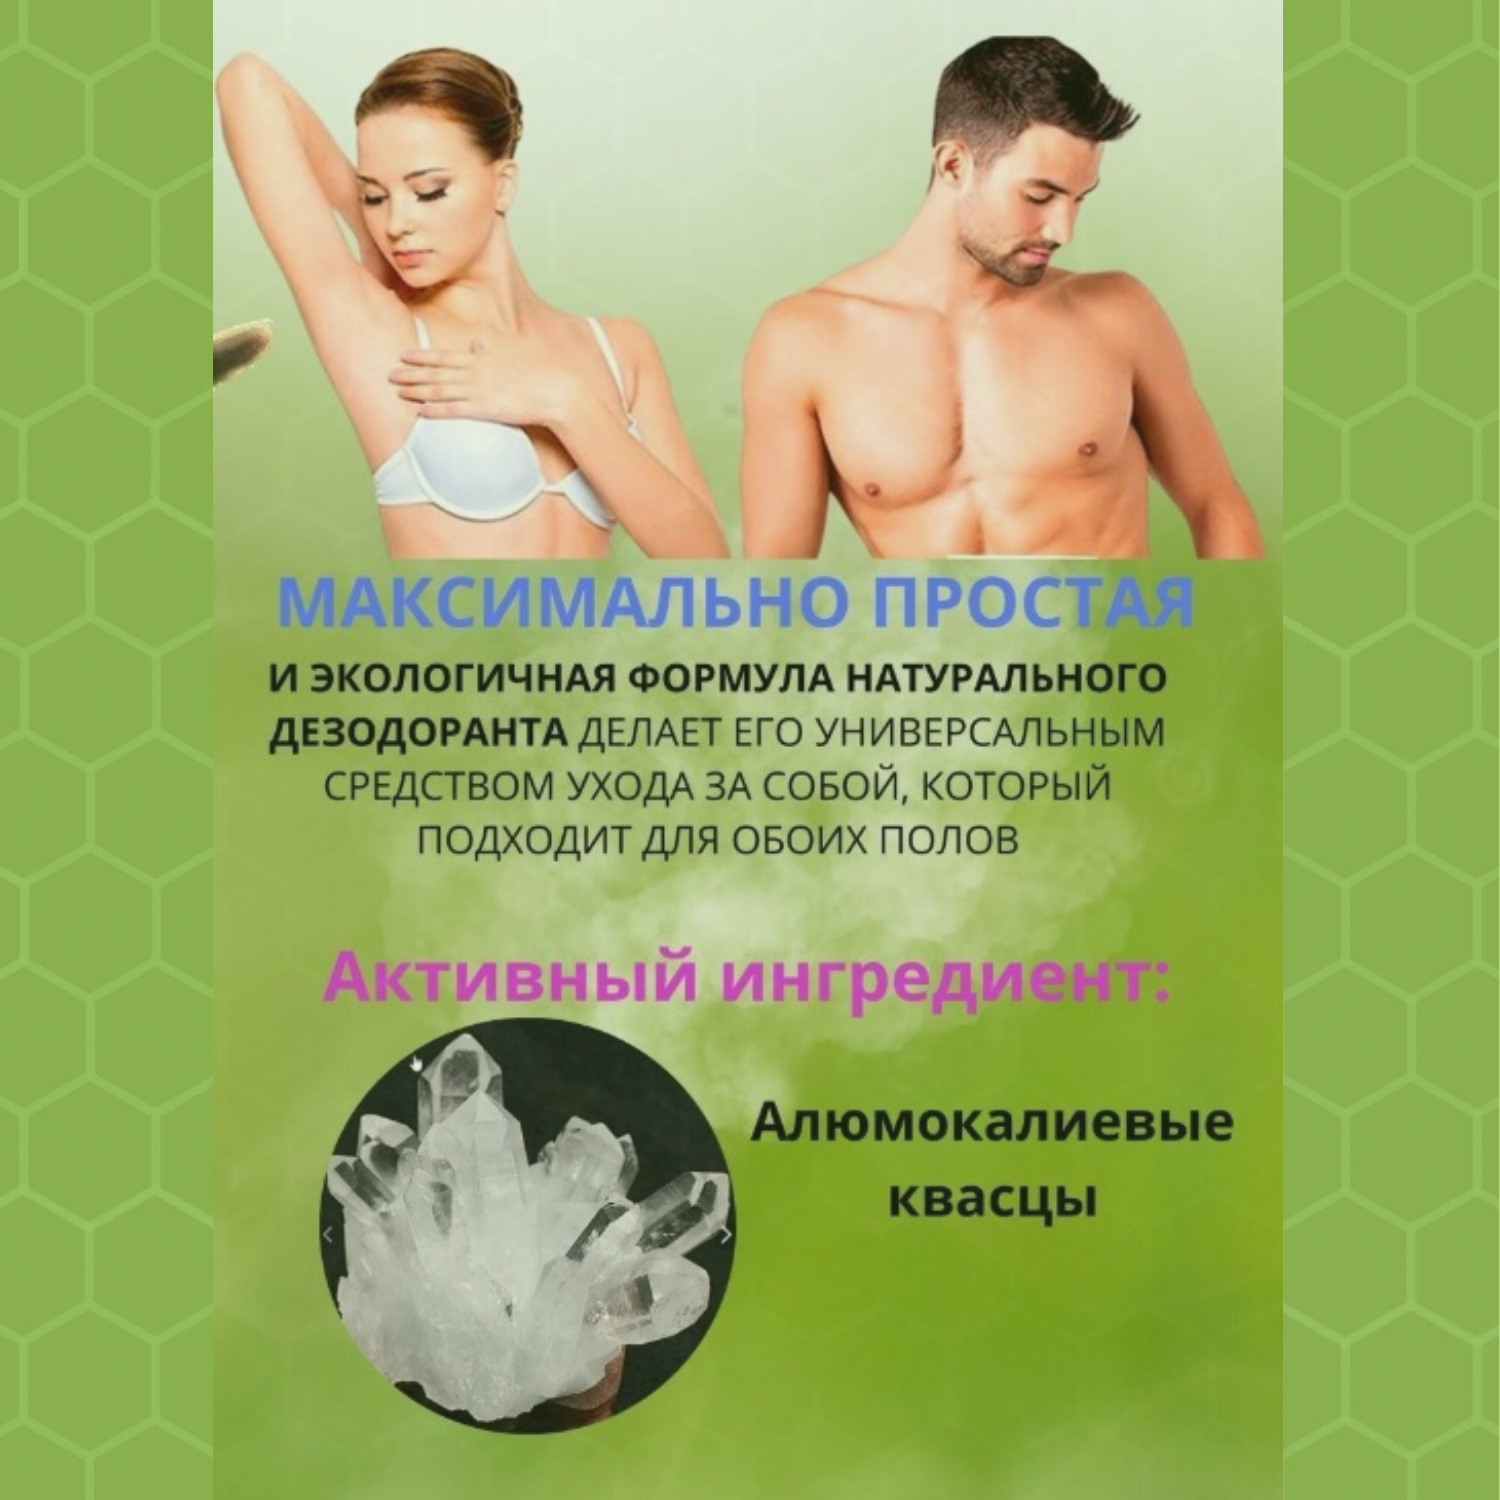 Сухой дезодорант интимный AMANDI женский 100 грамм - фото 5